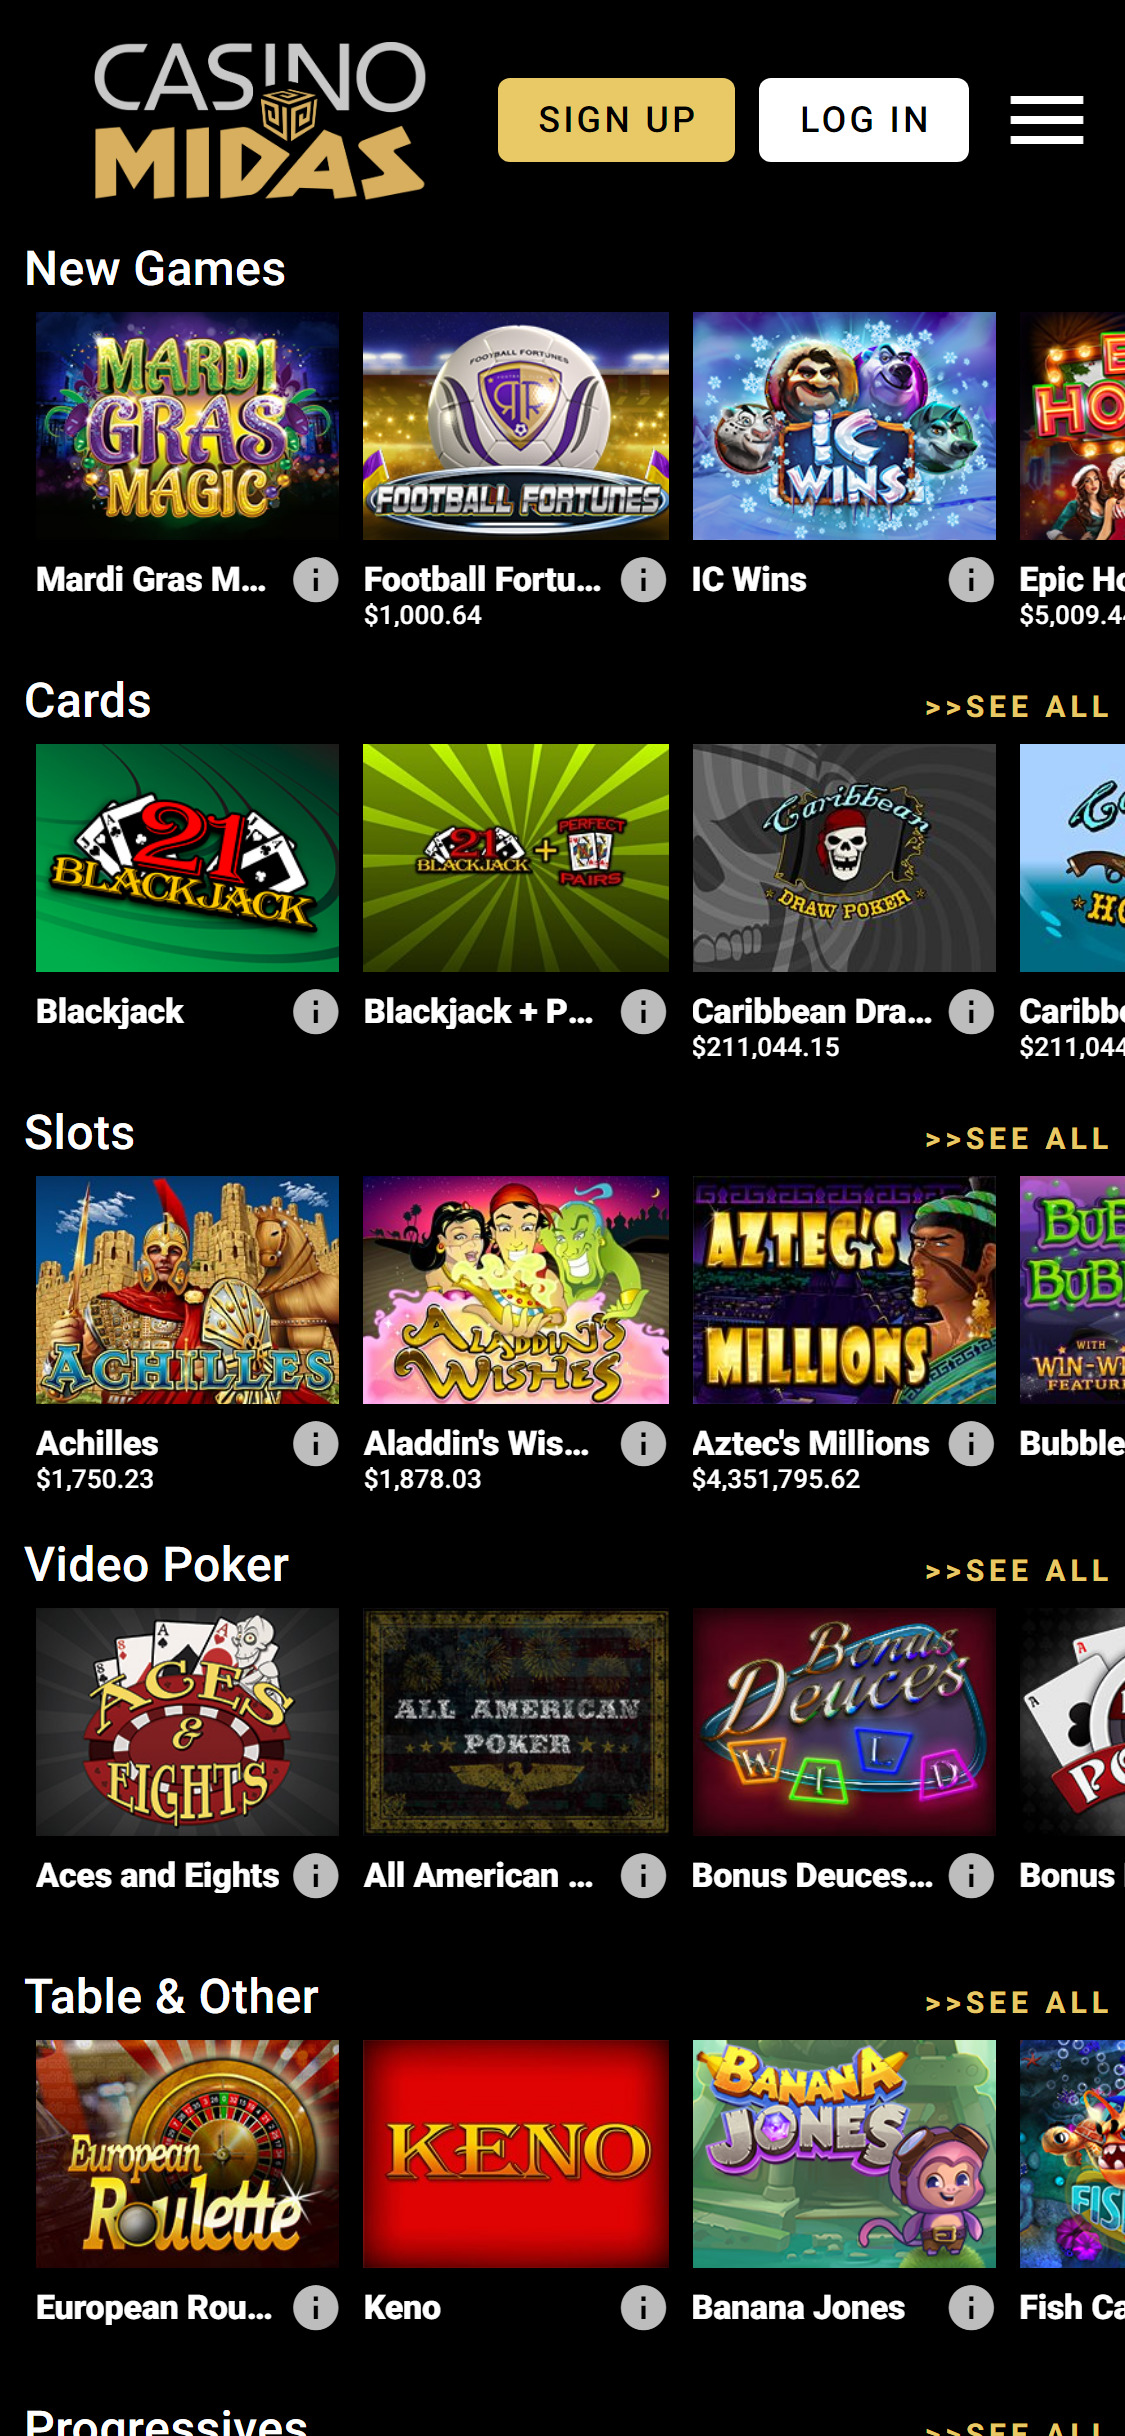 Casino Midas Mobile Games Review